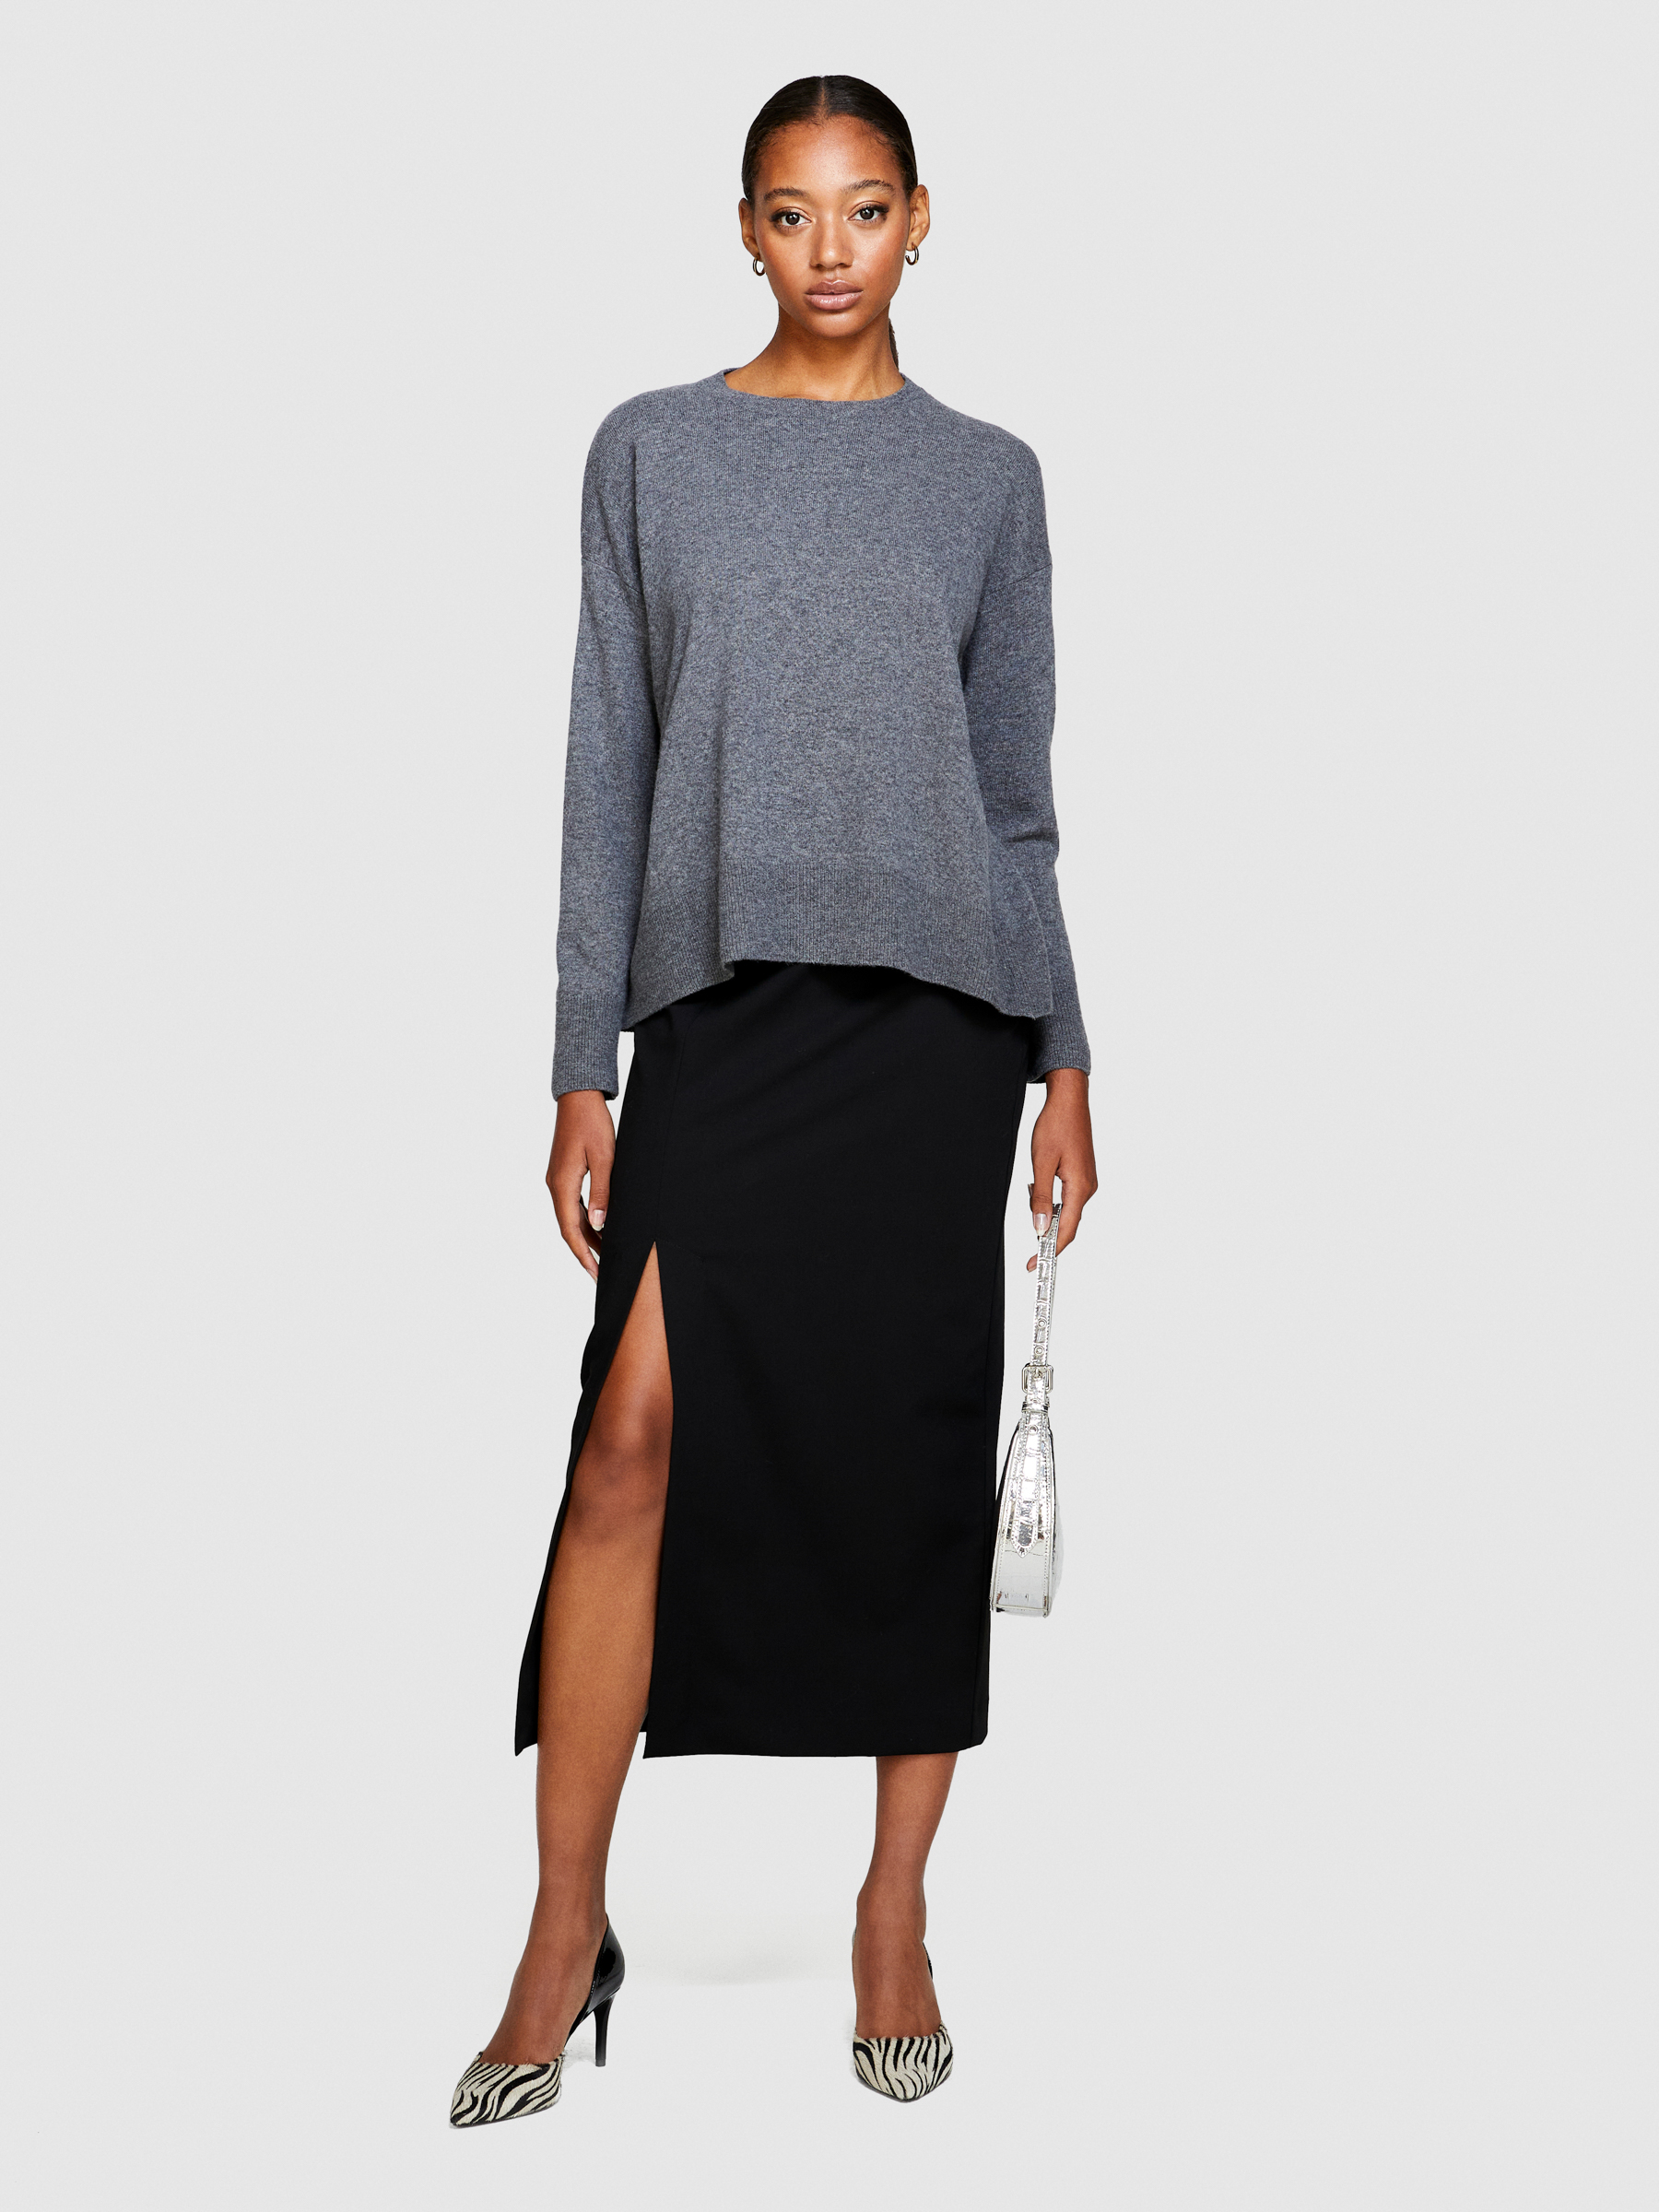 Sisley - Boxy Fit Sweater, Woman, Gray, Size: M